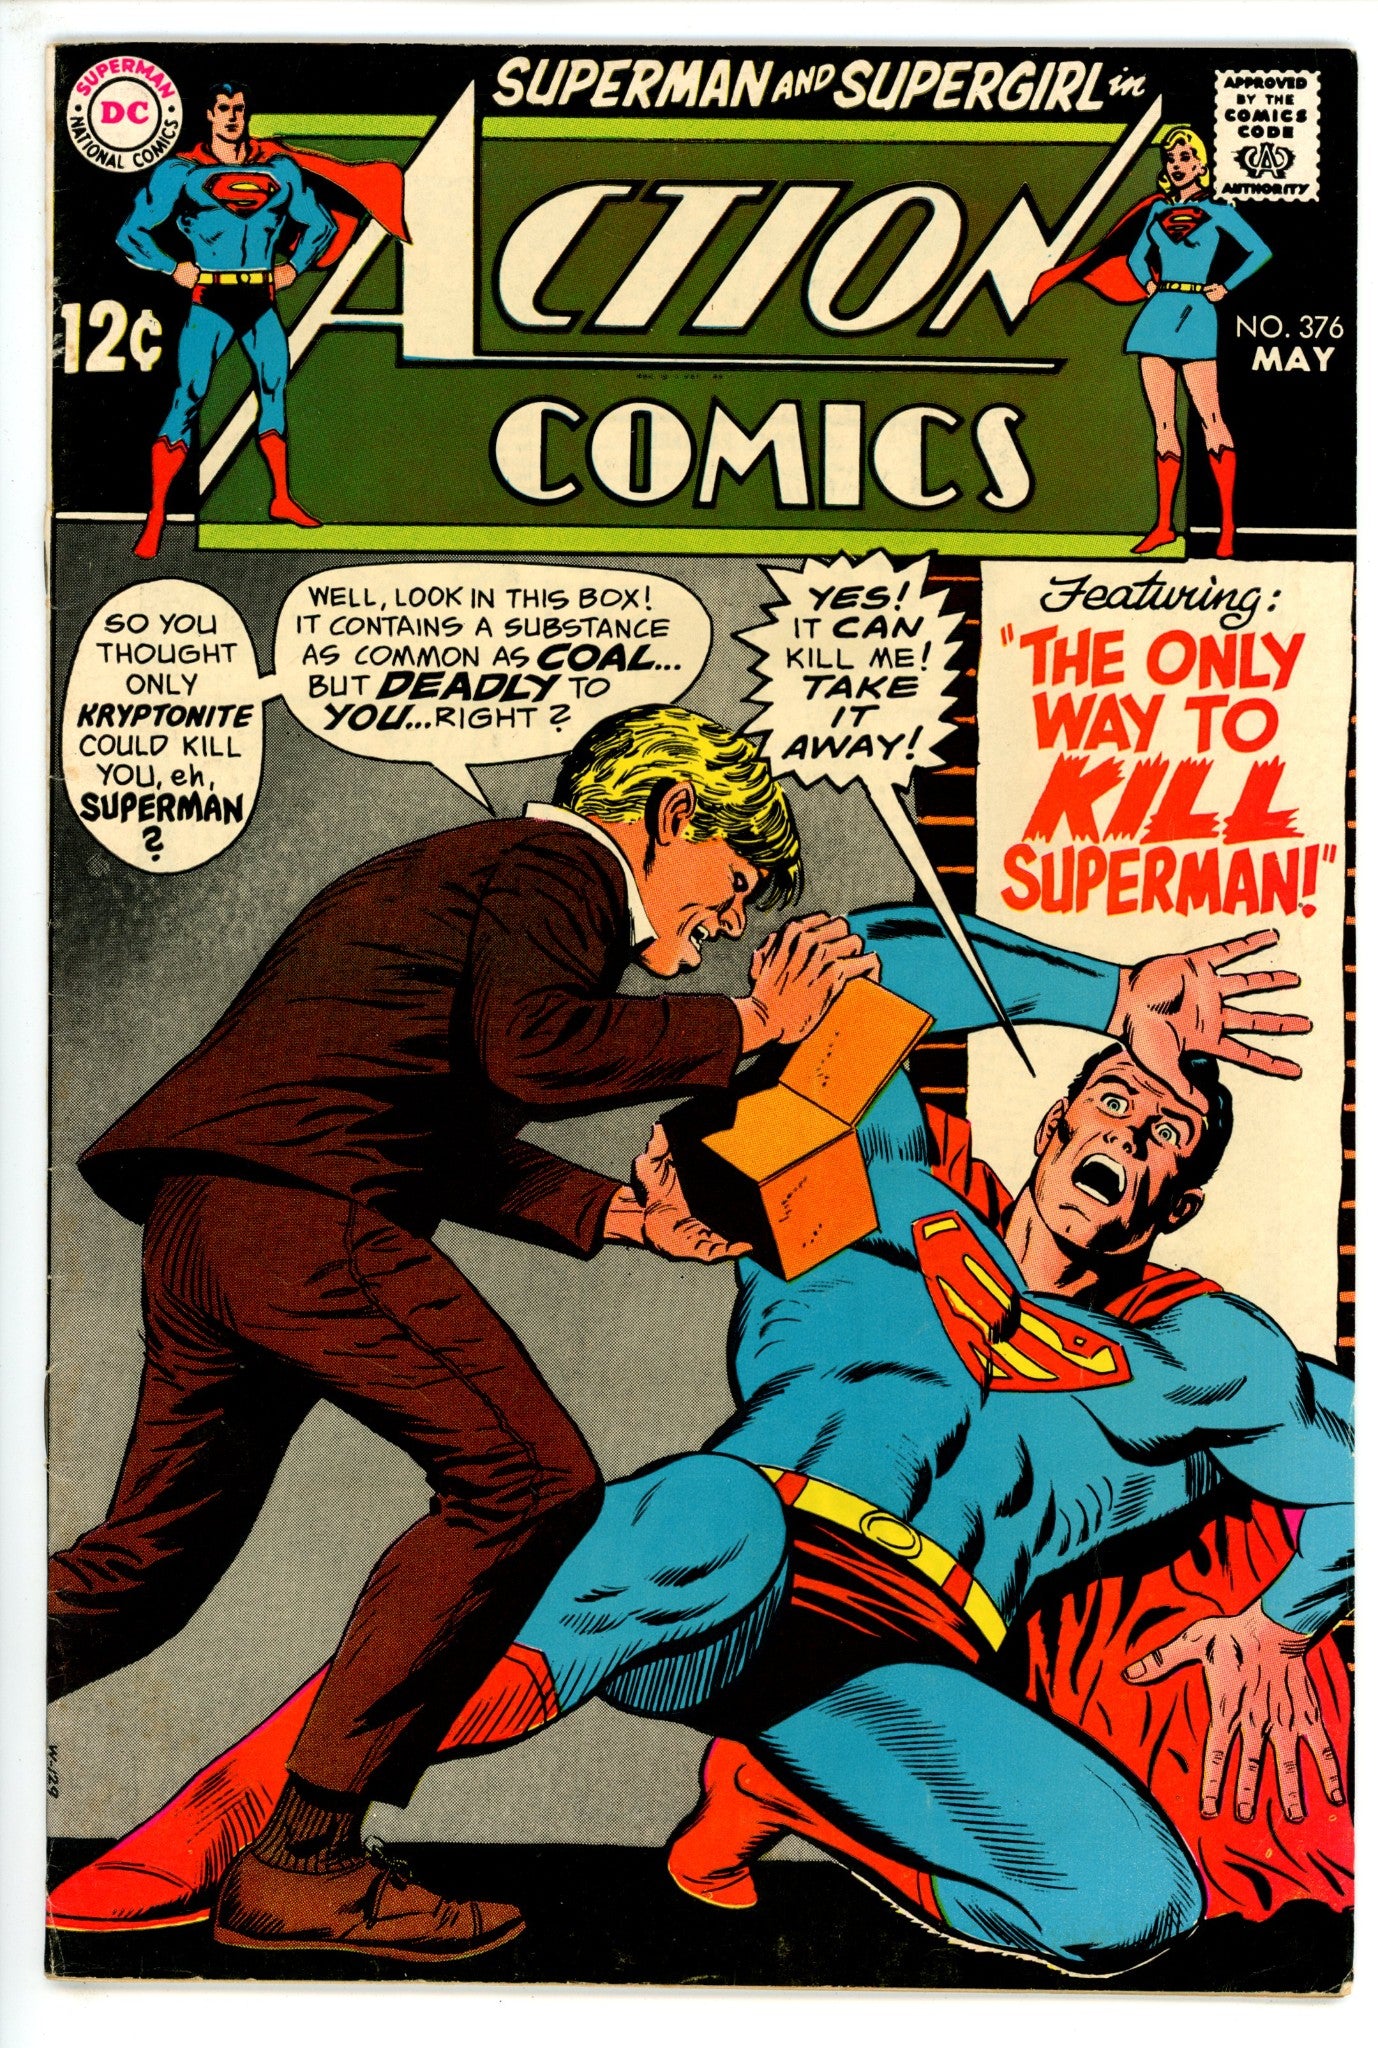 Action Comics Vol 1 376 FN